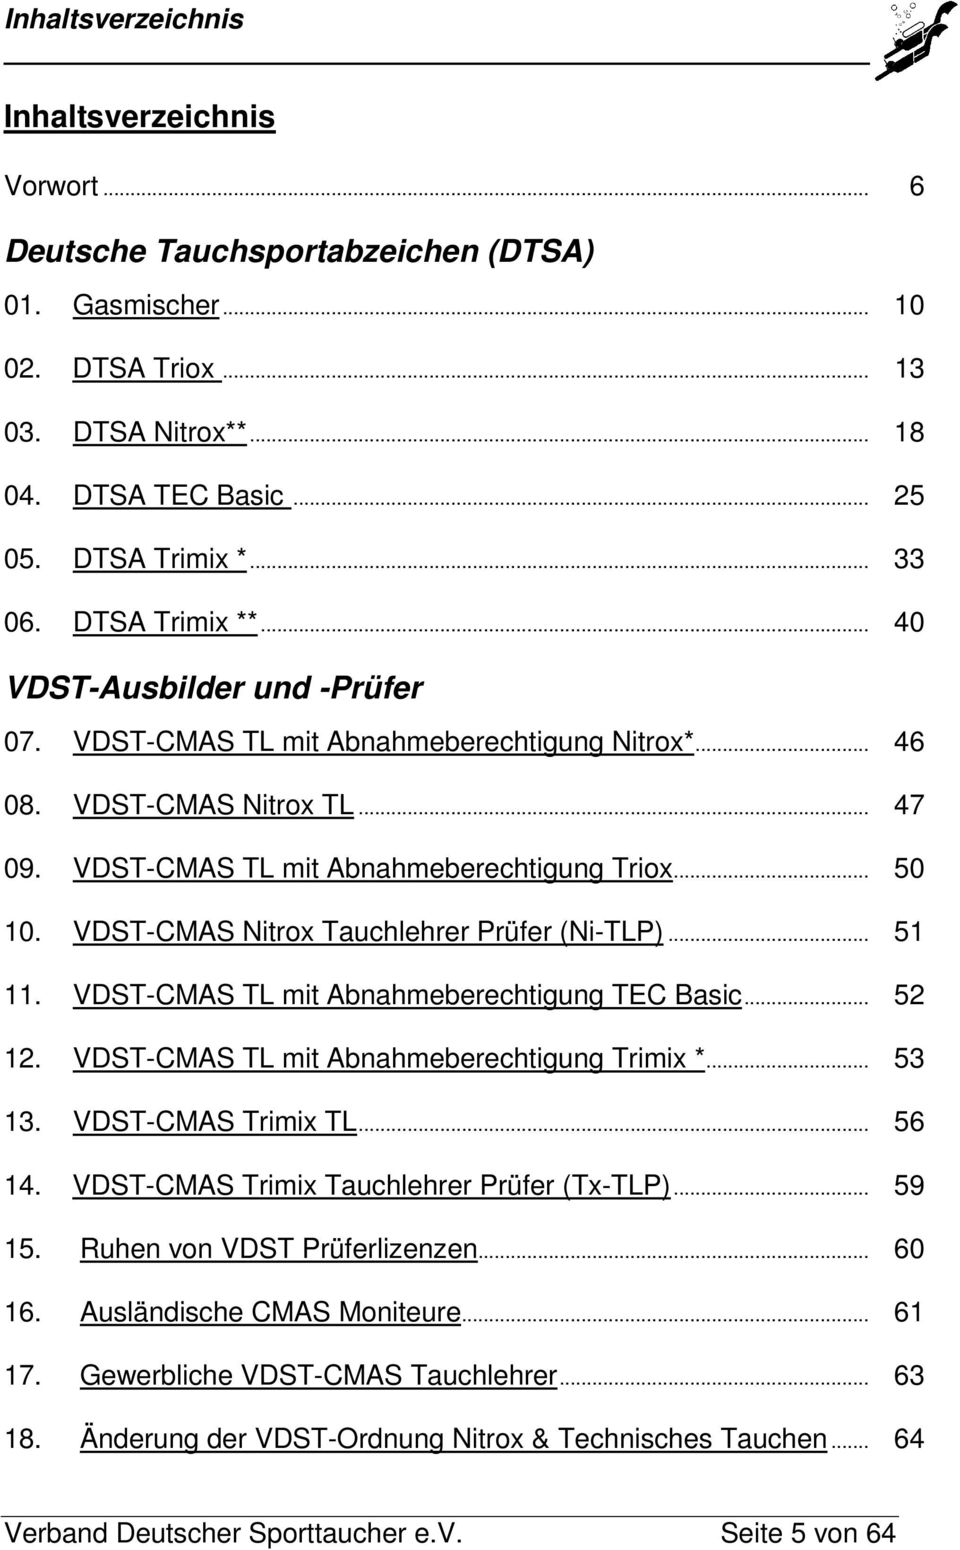 VDST-CMAS Nitrox Tauchlehrer Prüfer (Ni-TLP)... 51 11. VDST-CMAS TL mit Abnahmeberechtigung TEC Basic... 52 12. VDST-CMAS TL mit Abnahmeberechtigung Trimix *... 53 13. VDST-CMAS Trimix TL... 56 14.